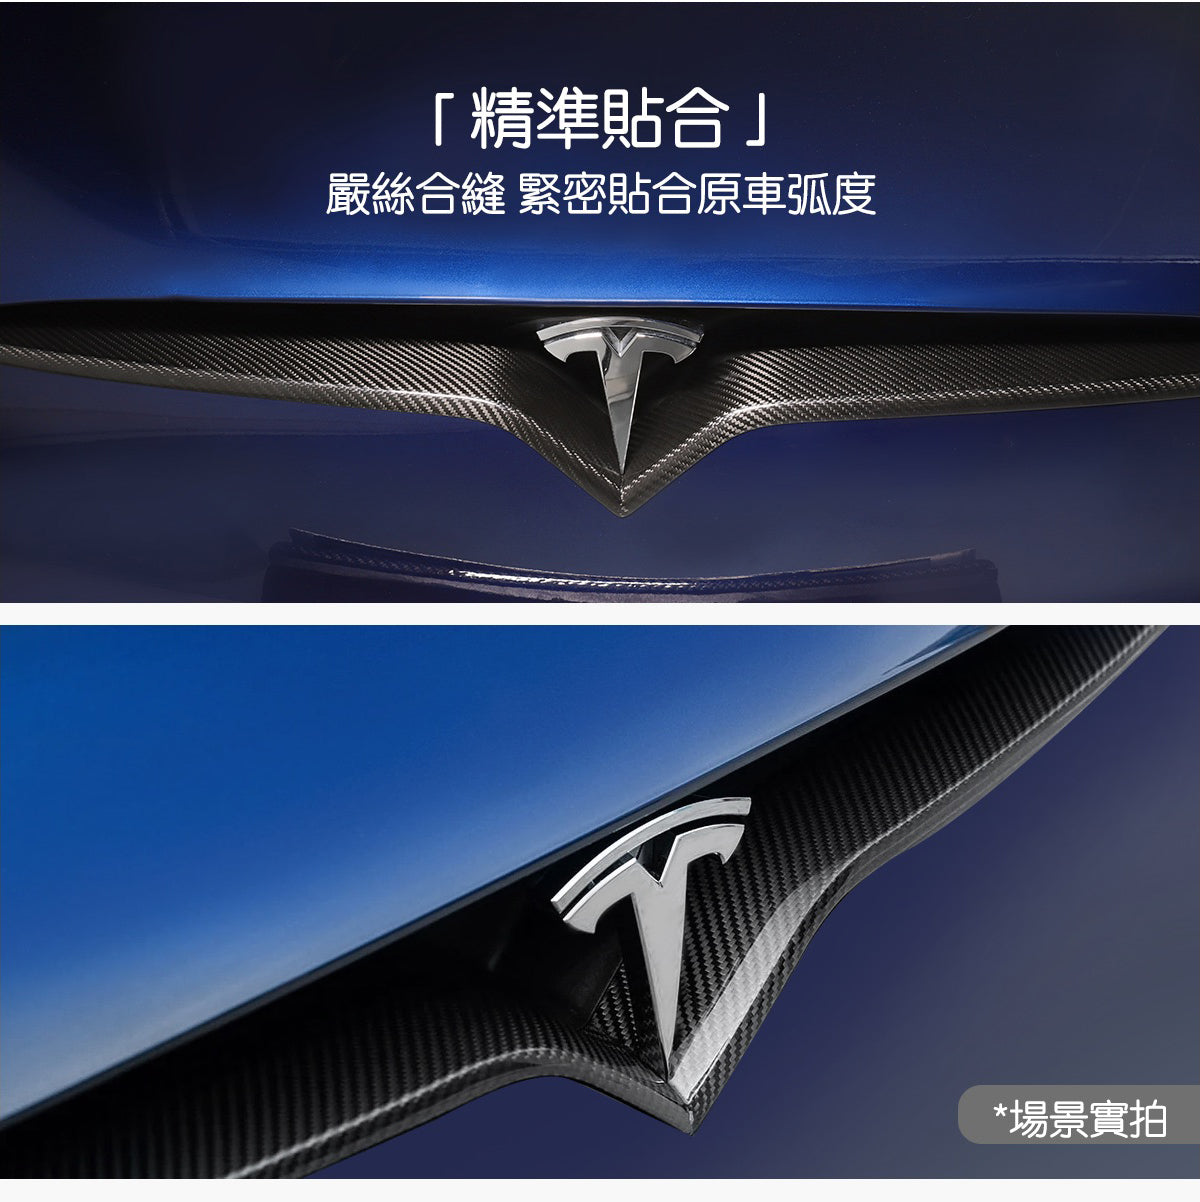 TPARTS Model S/X 真碳纖維中網飾條 - 啞黑款